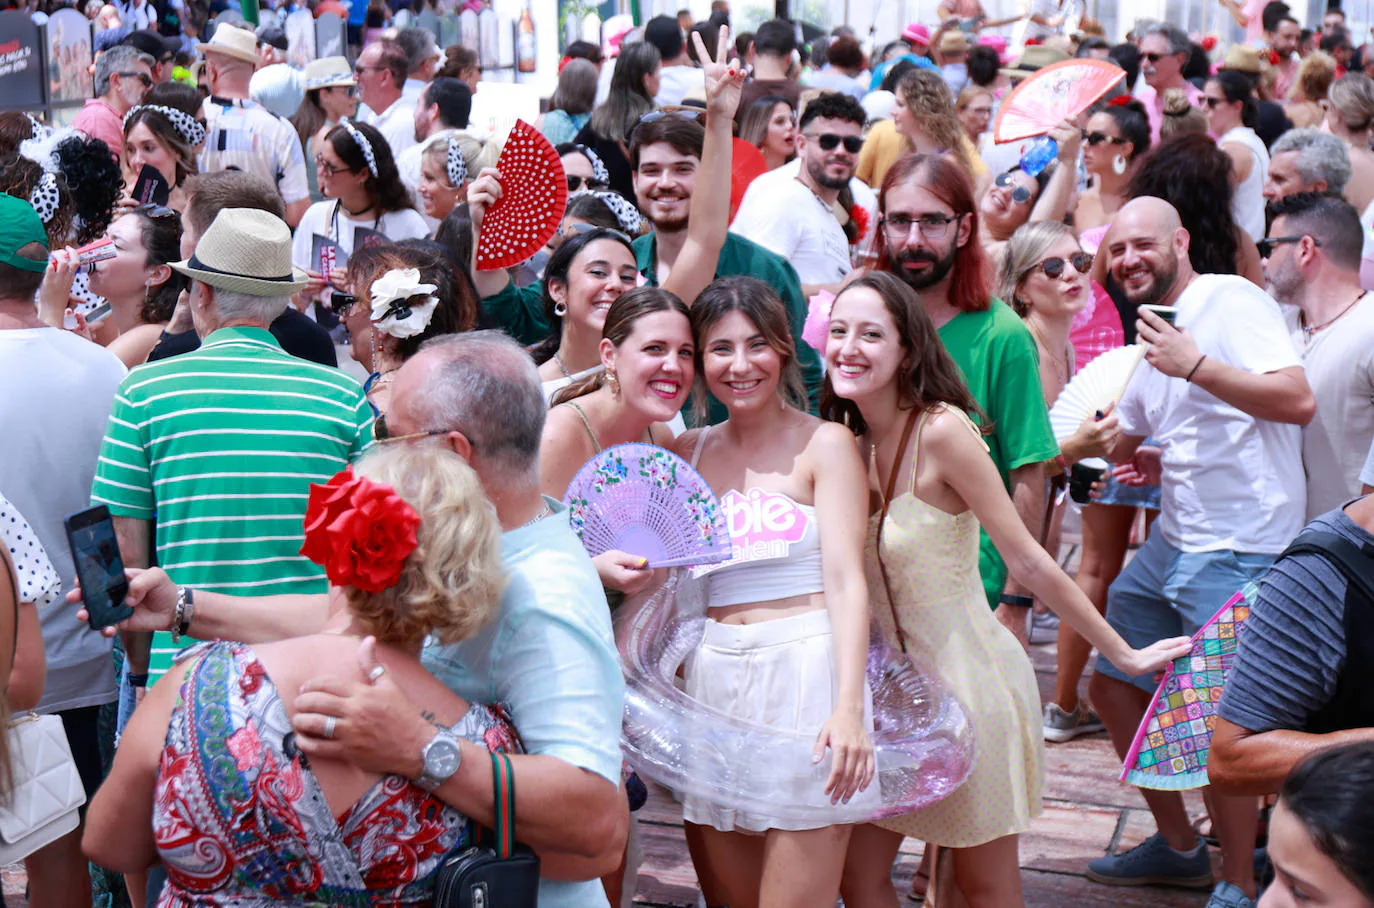 Turistas y locales, mayores y jóvenes aprovechan el día festivo para pasearse y disfrutar del ambiente del centro la última jornada de la feria